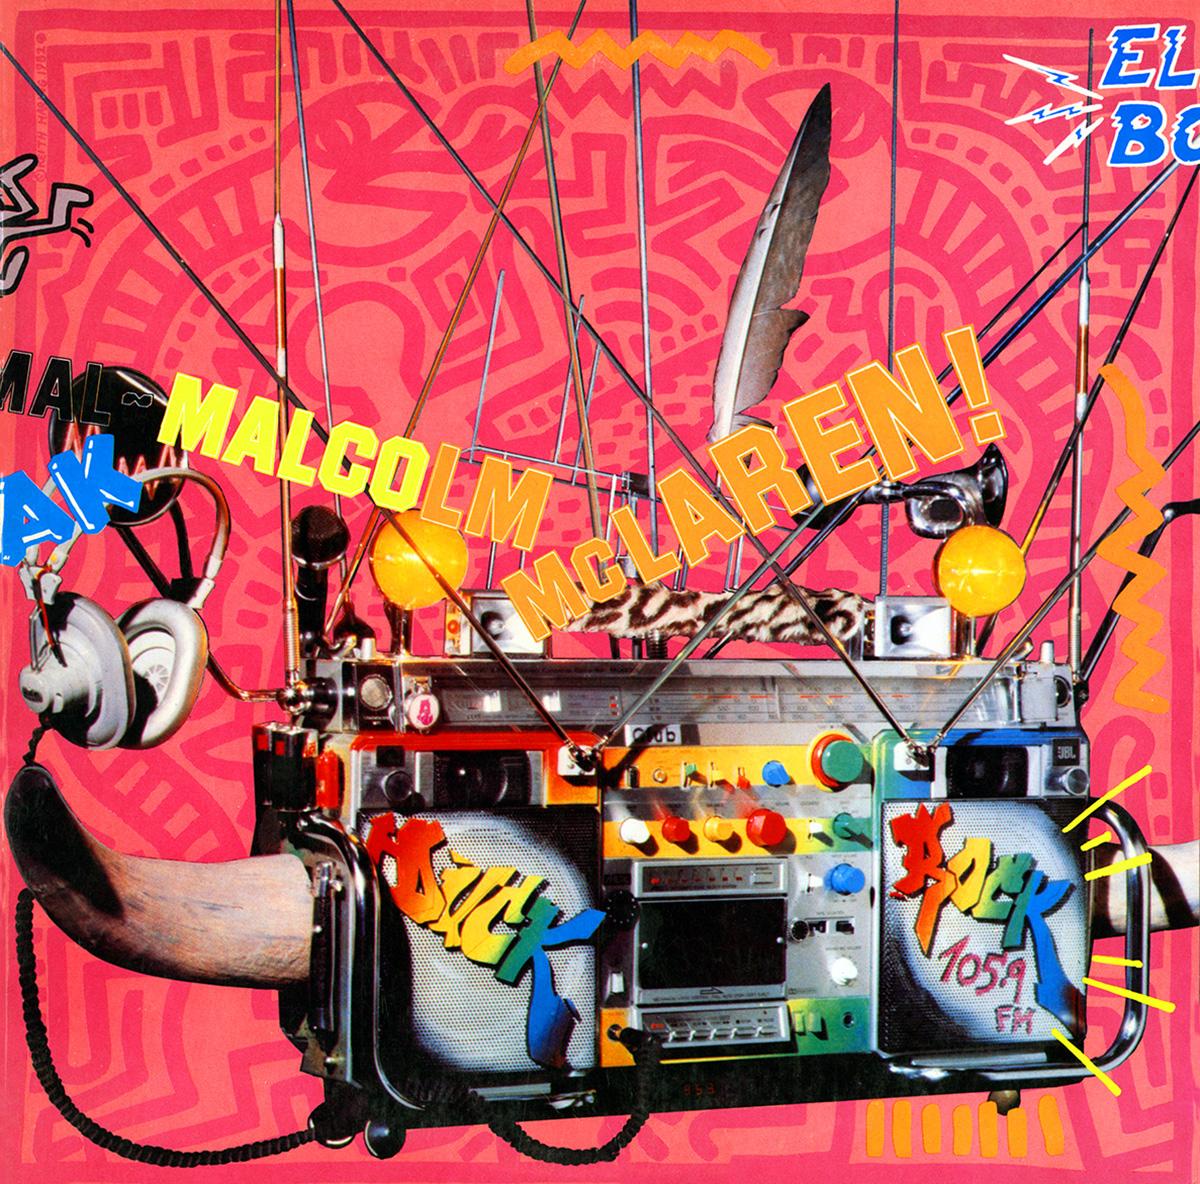 Vintage Keith Haring Plattencover, 1982-1987. Satz von 4 Einzelstücken mit ihren jeweiligen Alben.

Haring-Illustrationen finden sich auf der Vorder- und Rückseite des Einbands sowie als illustrierte Beilagen/Booklets auf zwei der Alben (siehe